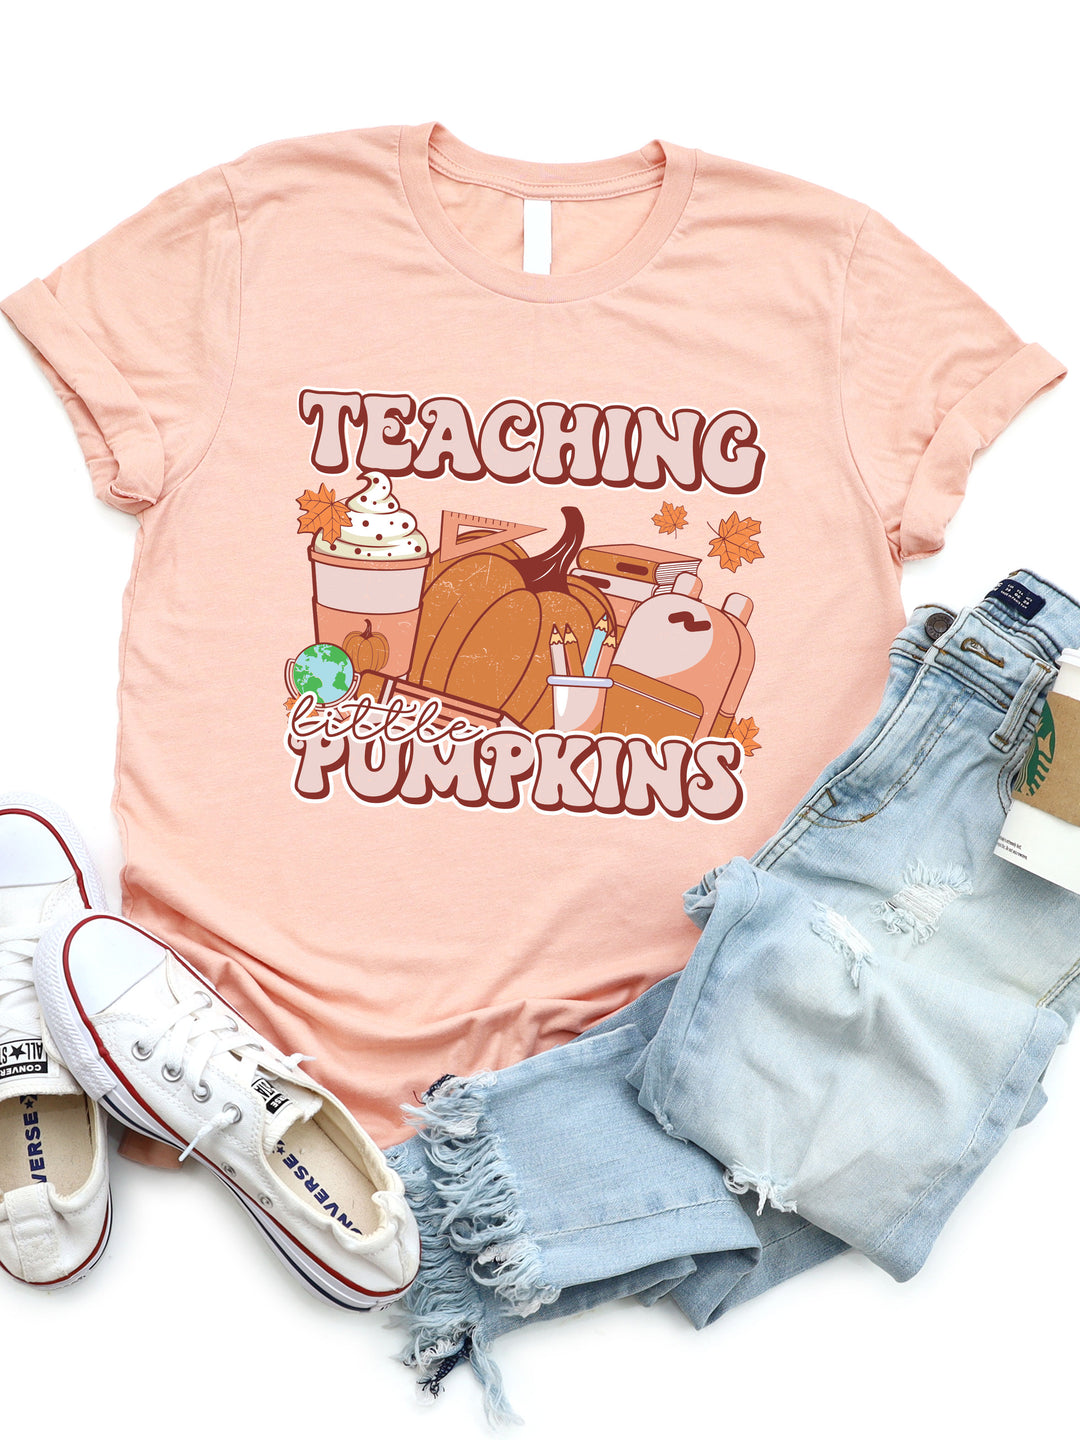 Teaching Little Pumpkins Graphic Tee